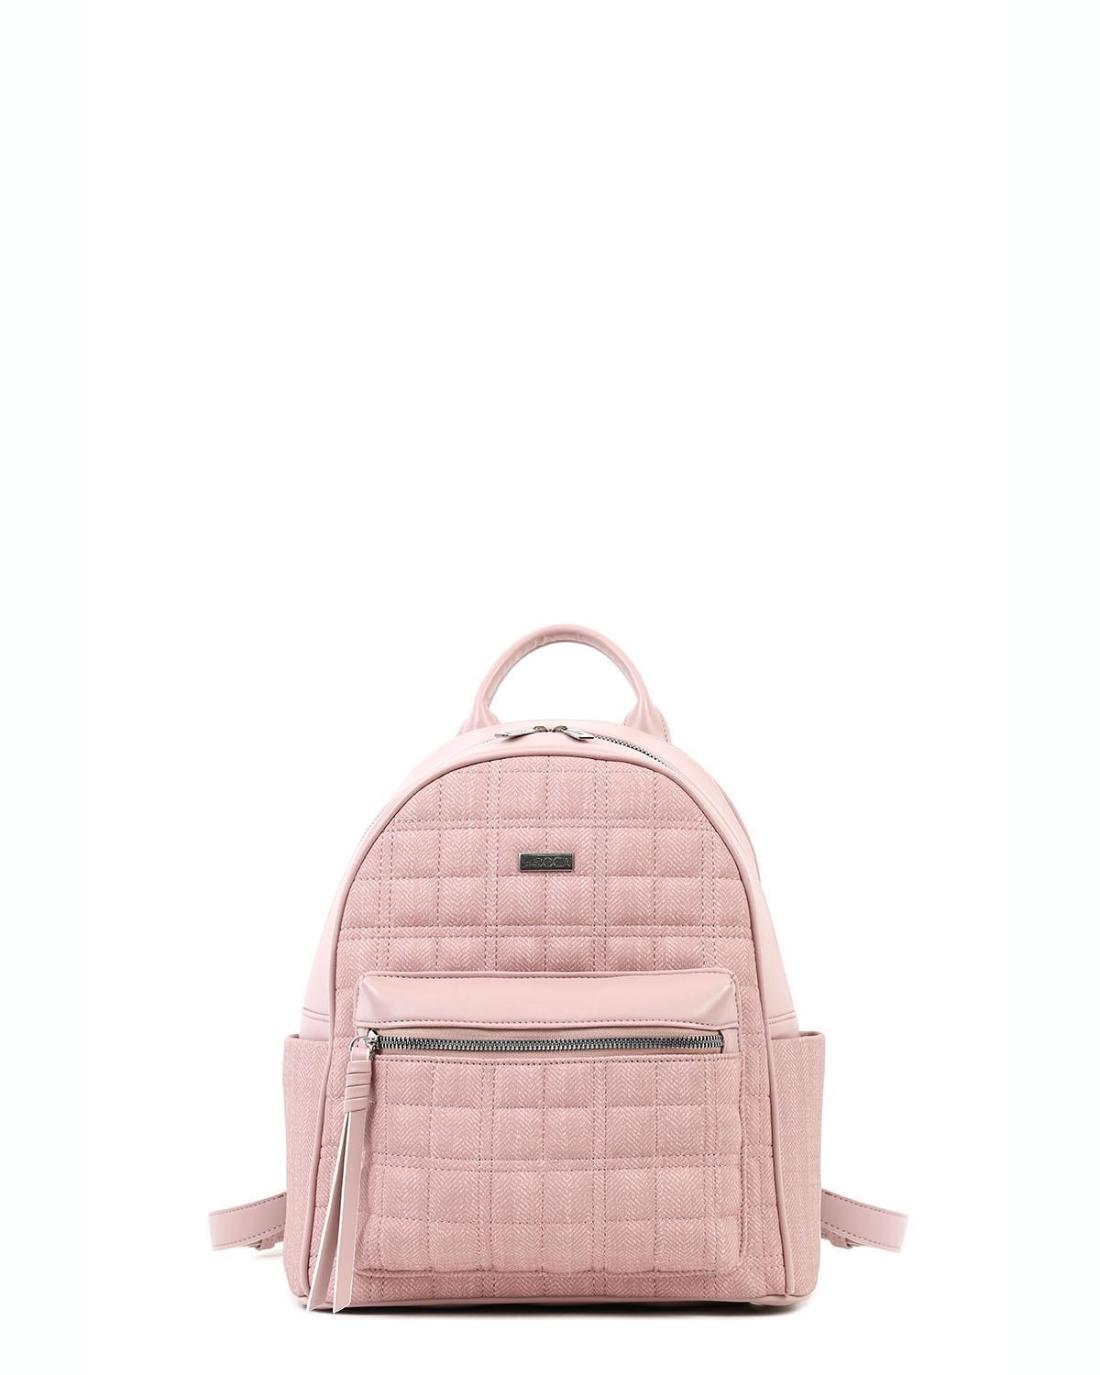 19314 | Γυναικεία τσάντα πλάτης ροζ